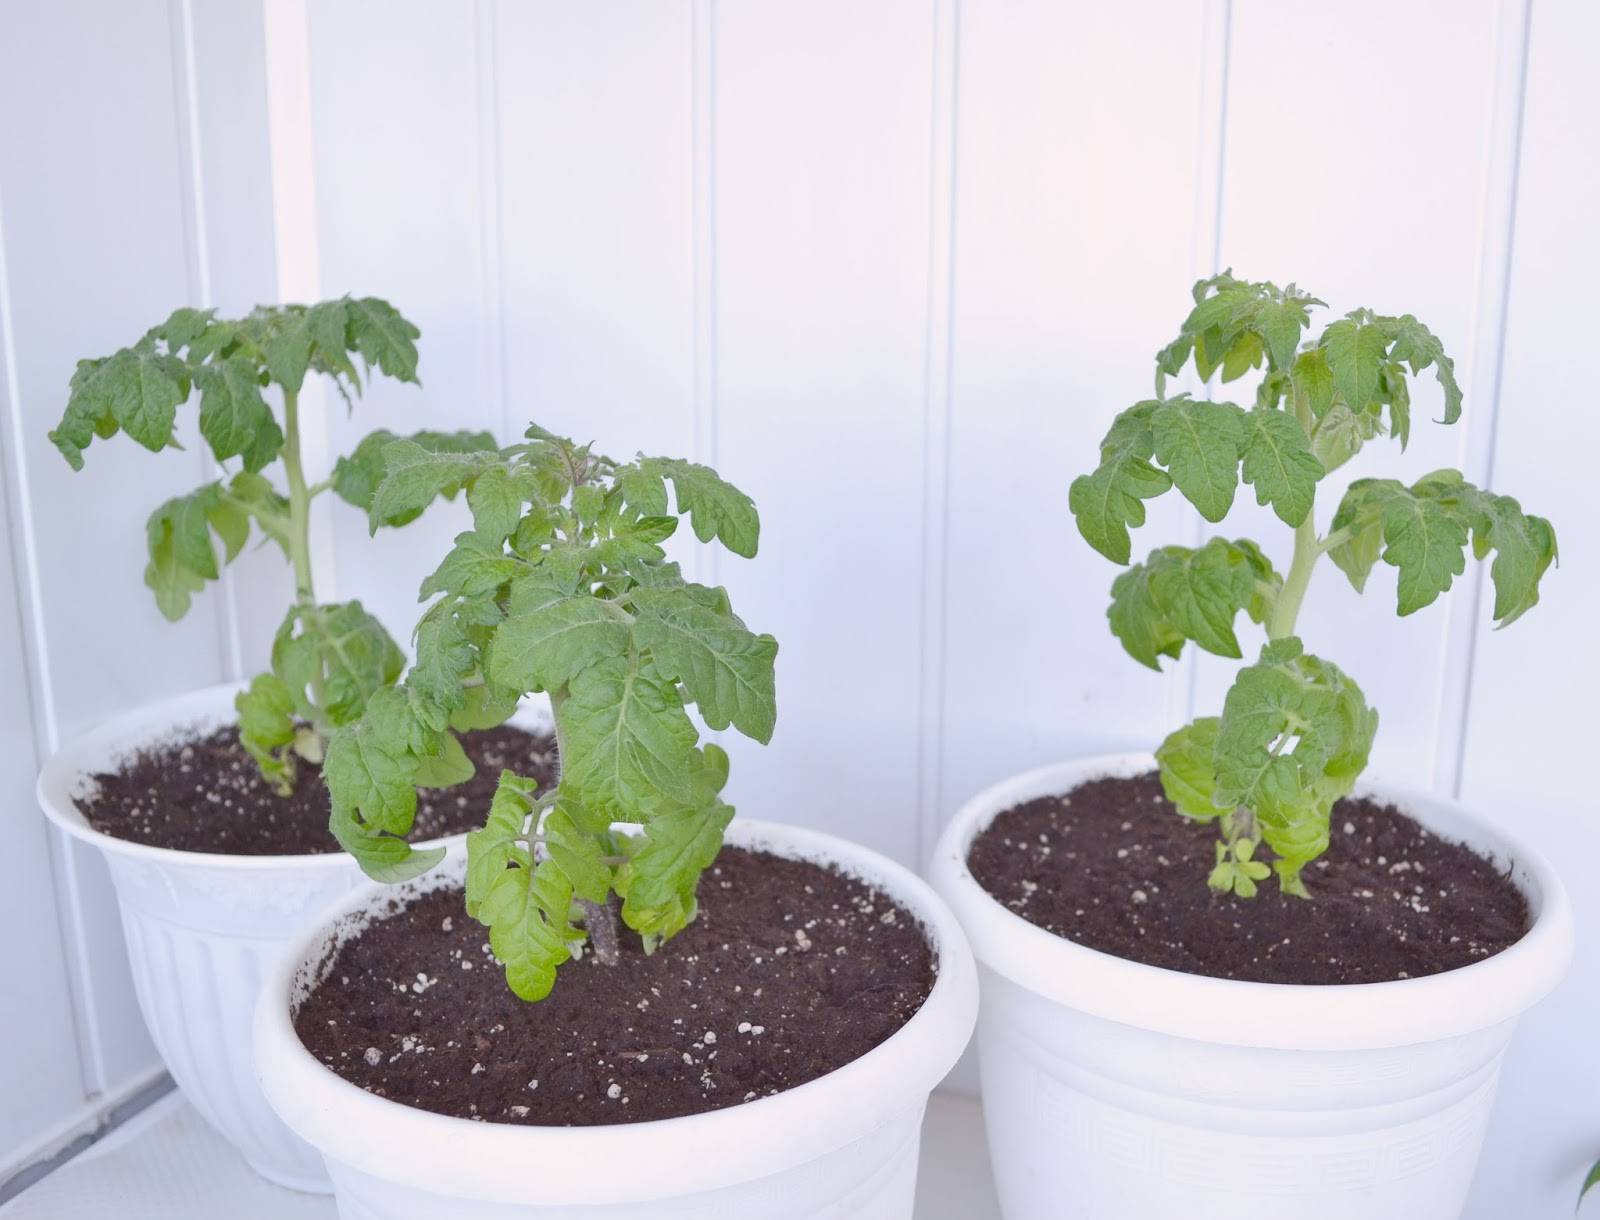 Помидоры на подоконнике – выращивание в квартире, пошагово, круглый год, уход, комнатные сорта